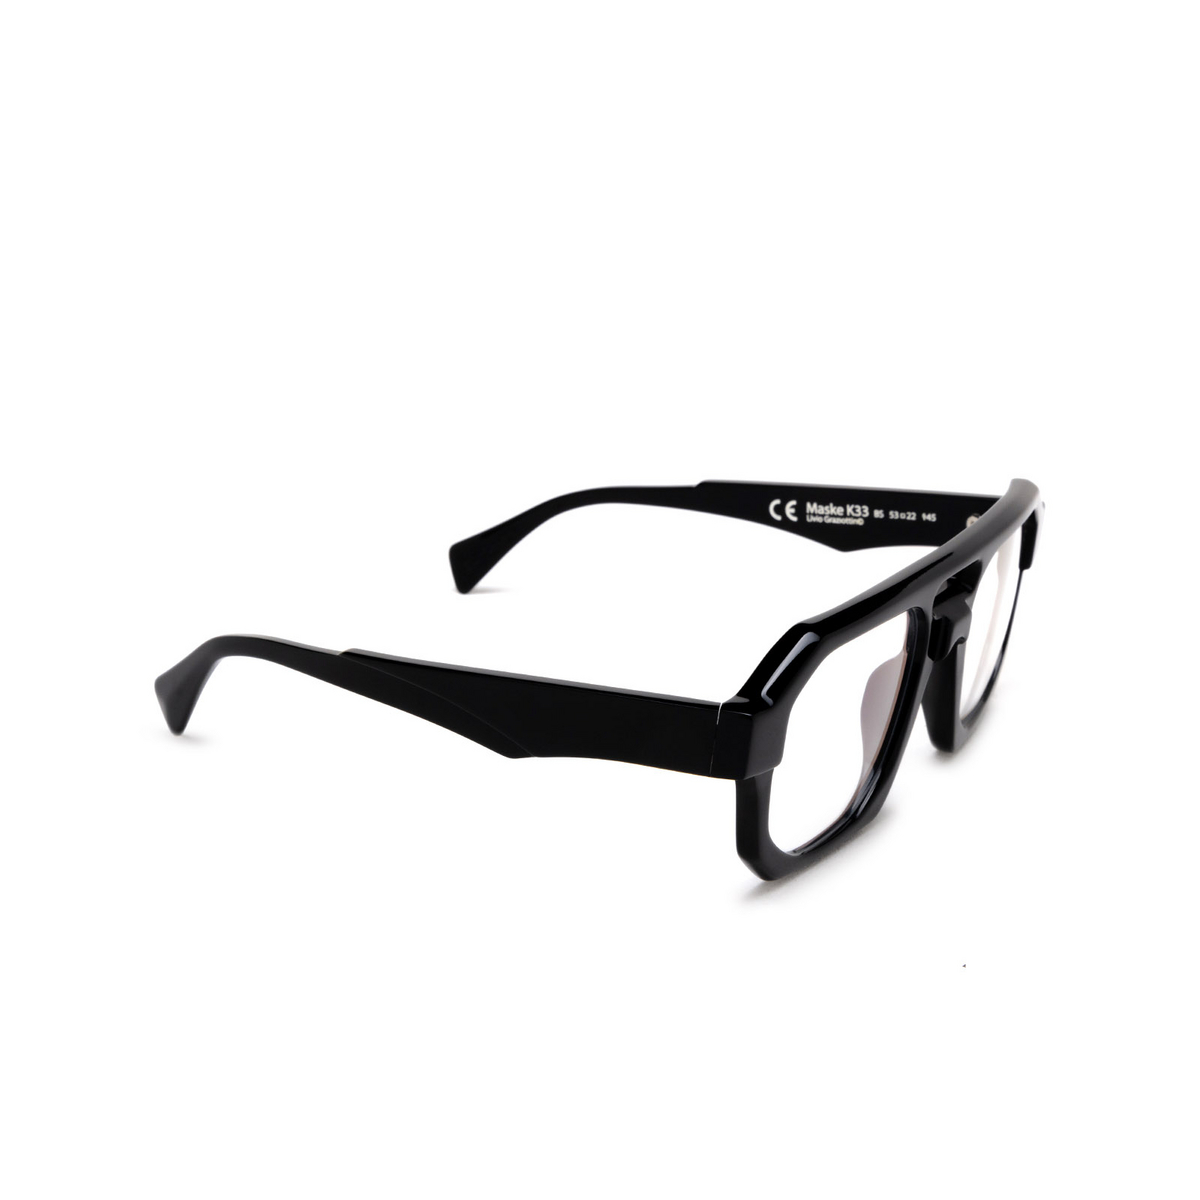 Kuboraum K33 Eyeglasses BS Black Shine - three-quarters view